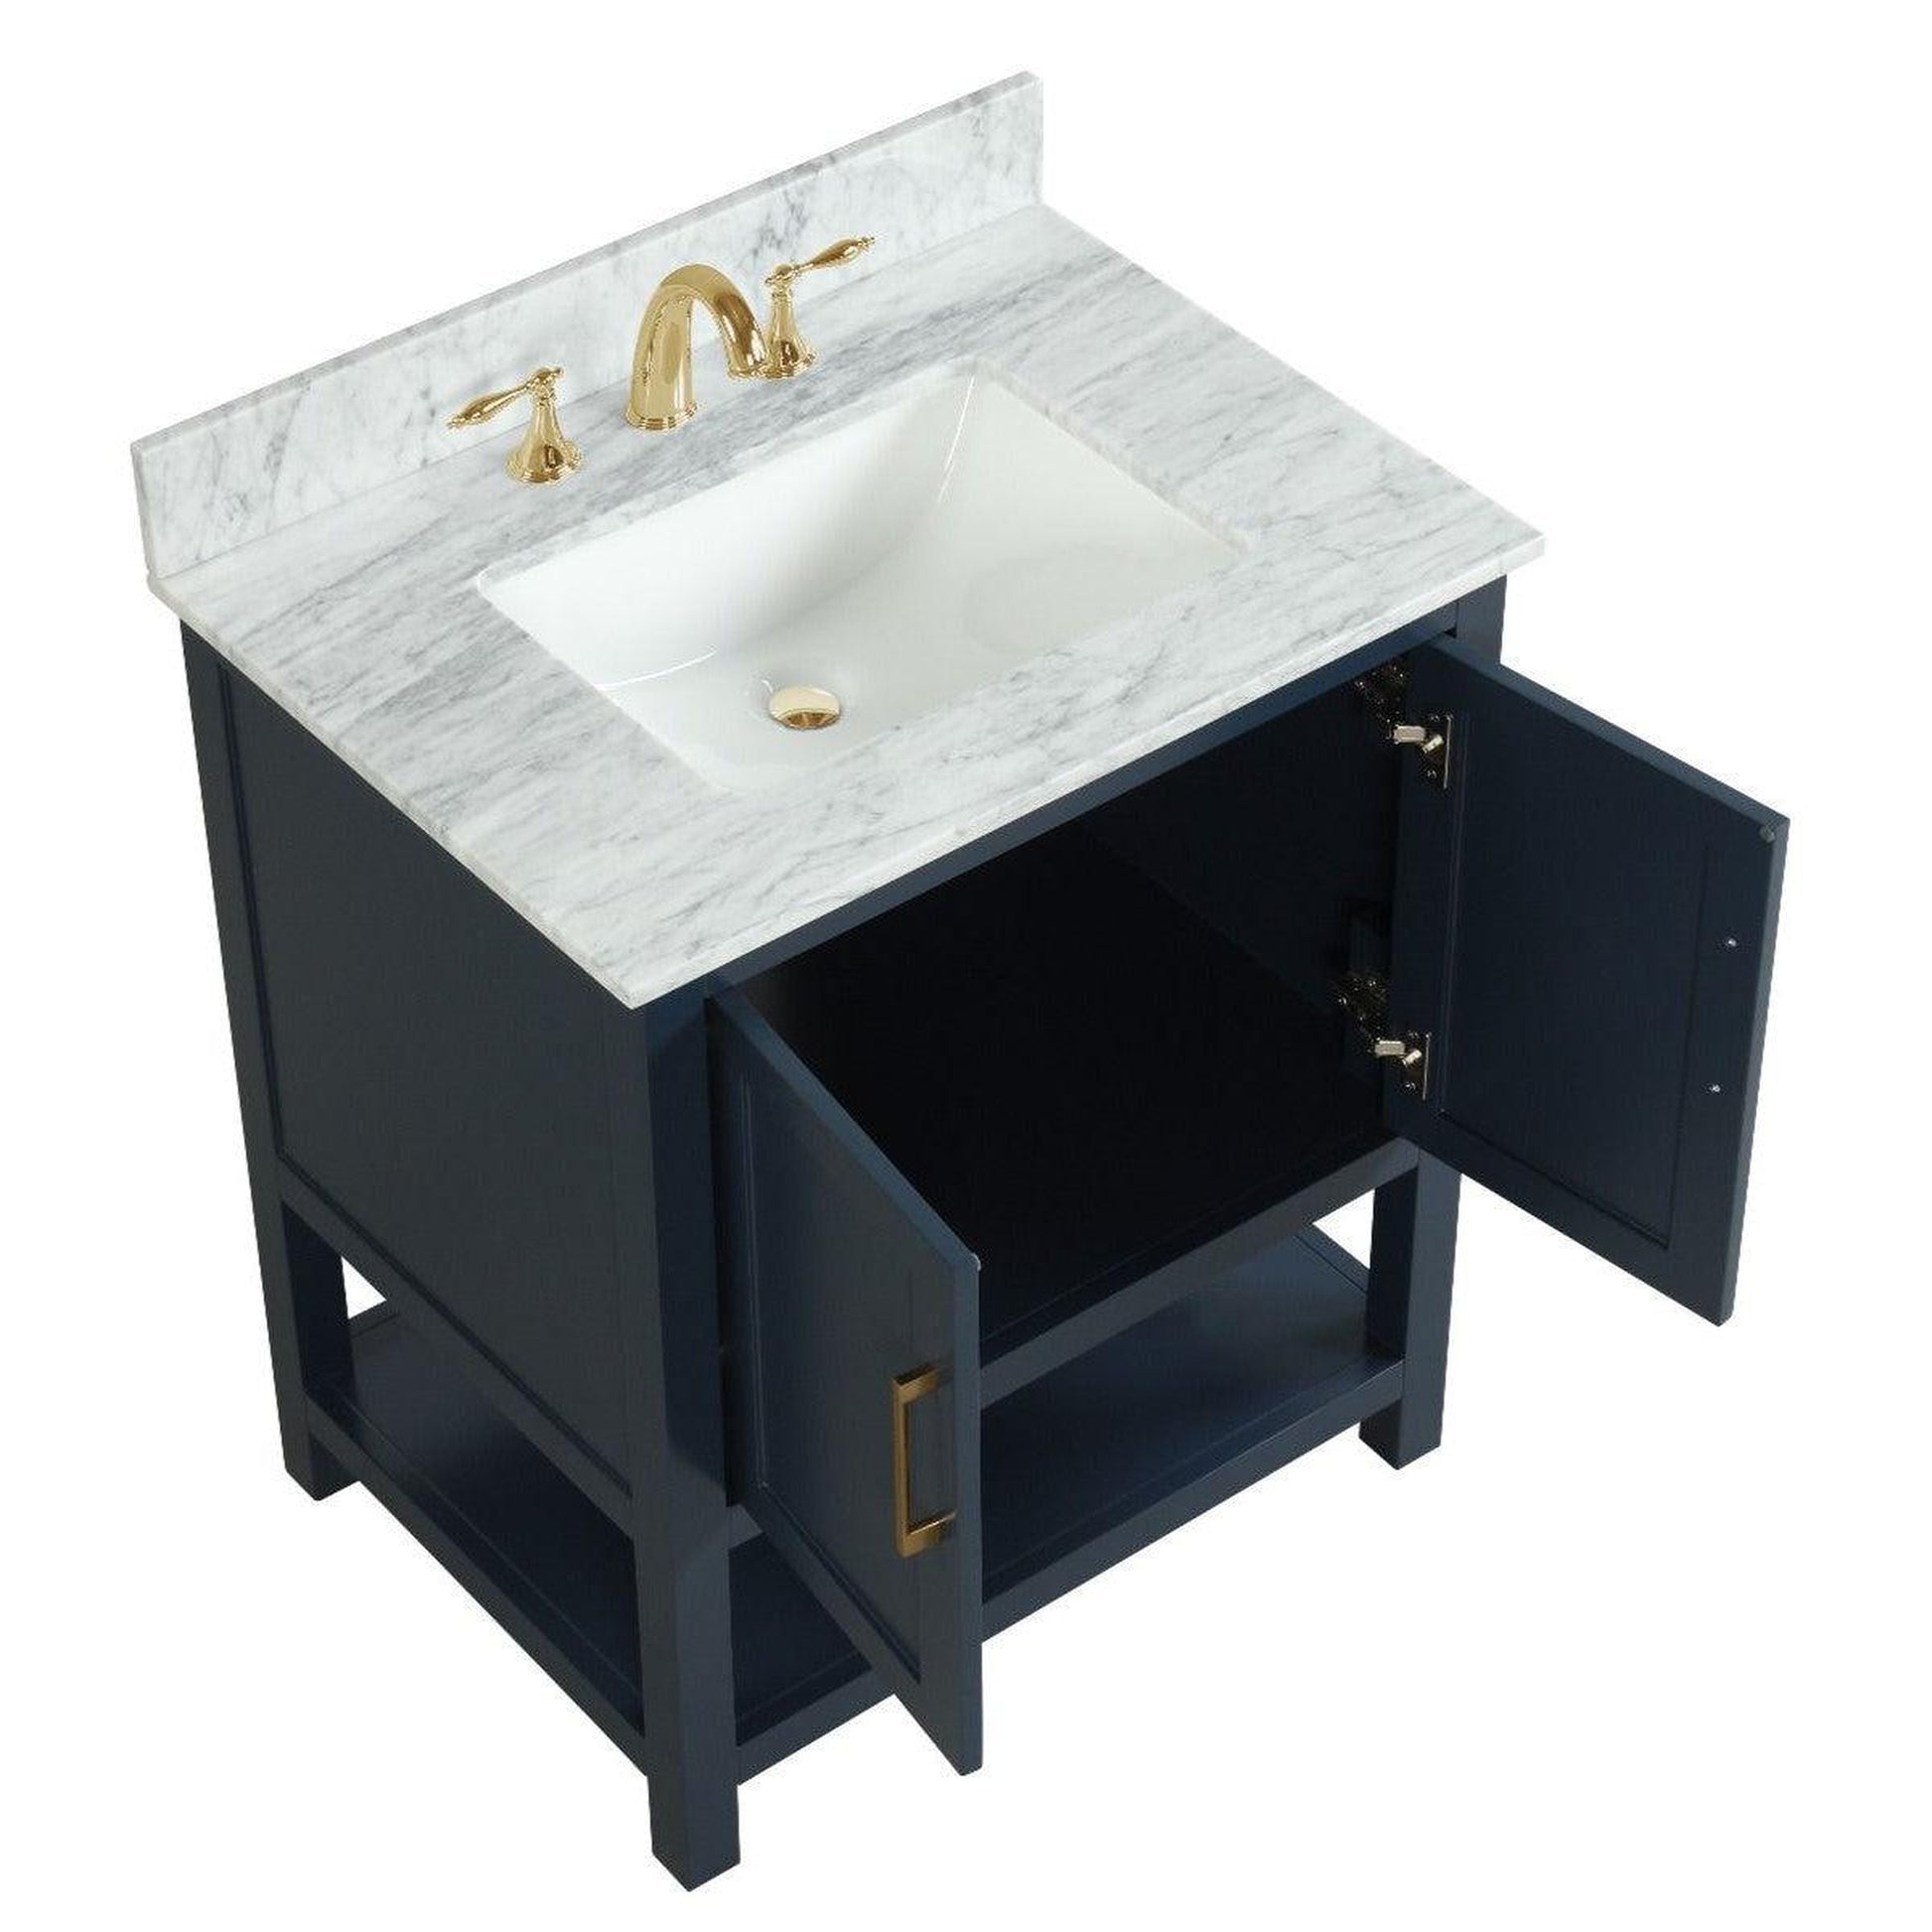 Ratel Santorini 30" 2-Door Aria Blue Vanity Set With Open Bottom Shelf